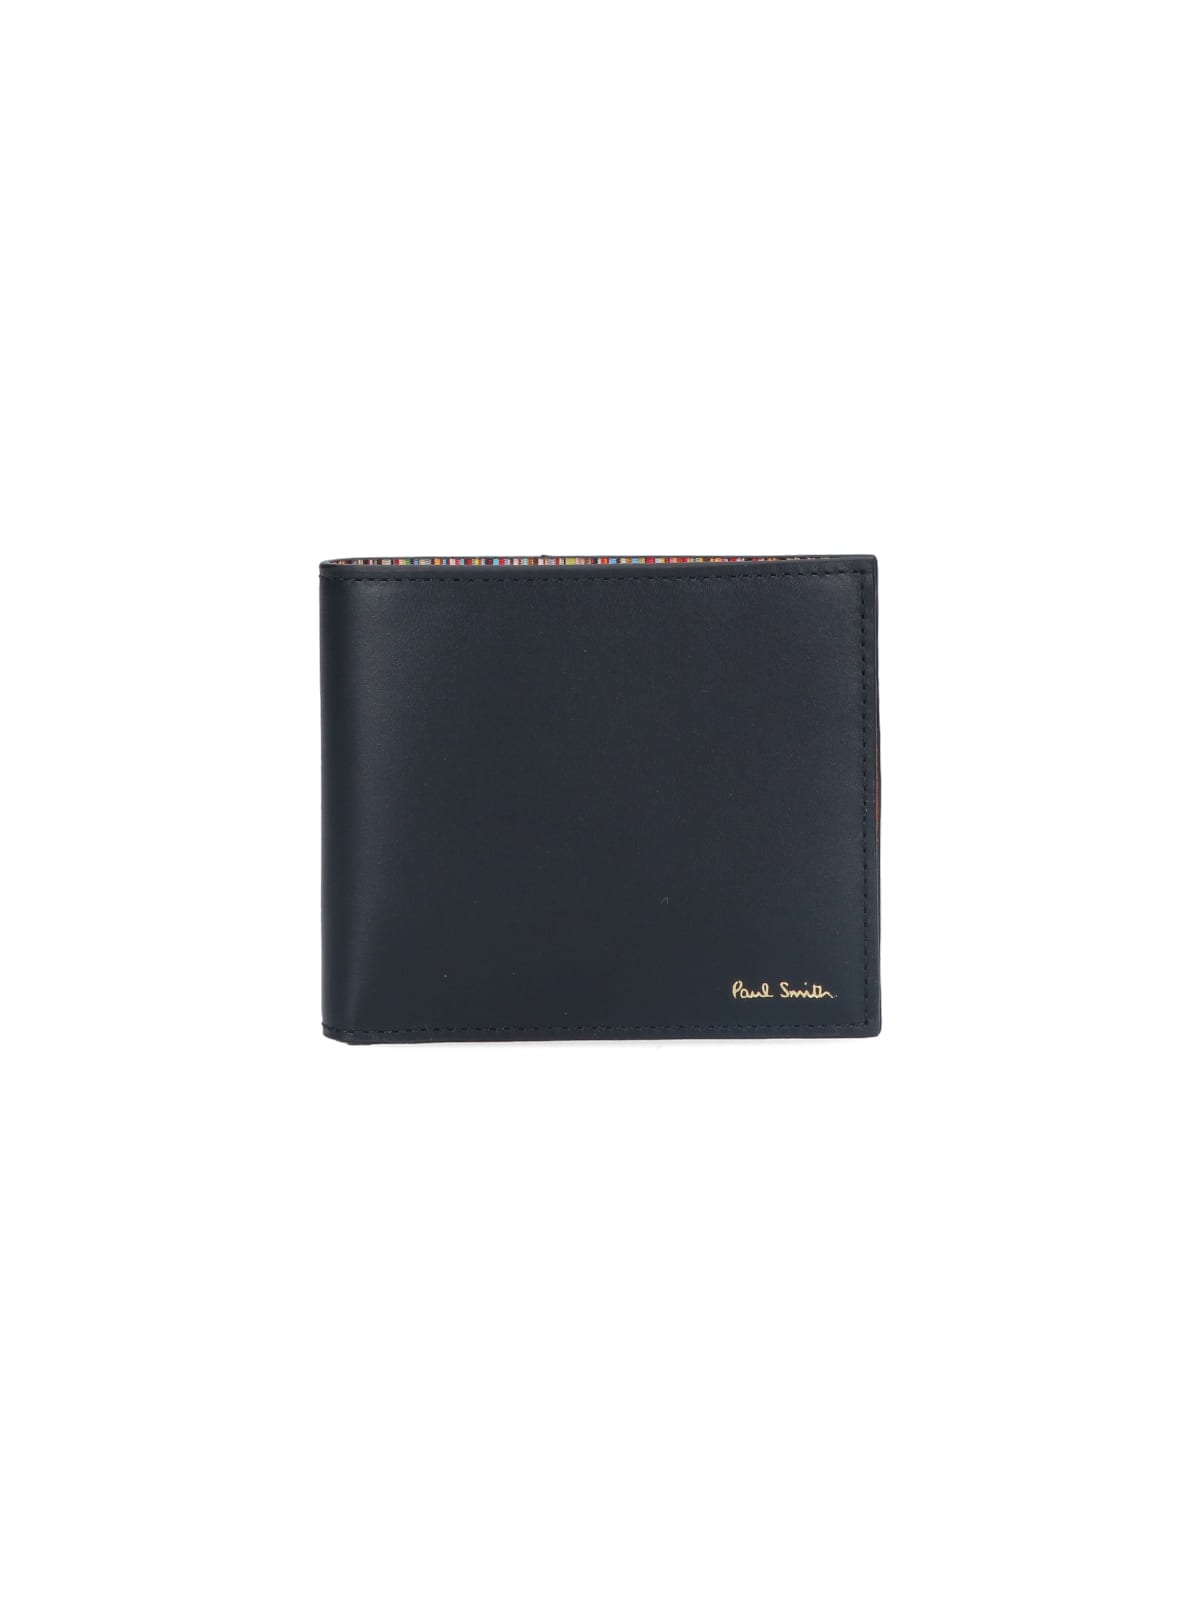 Paul Smith Wallet In Black